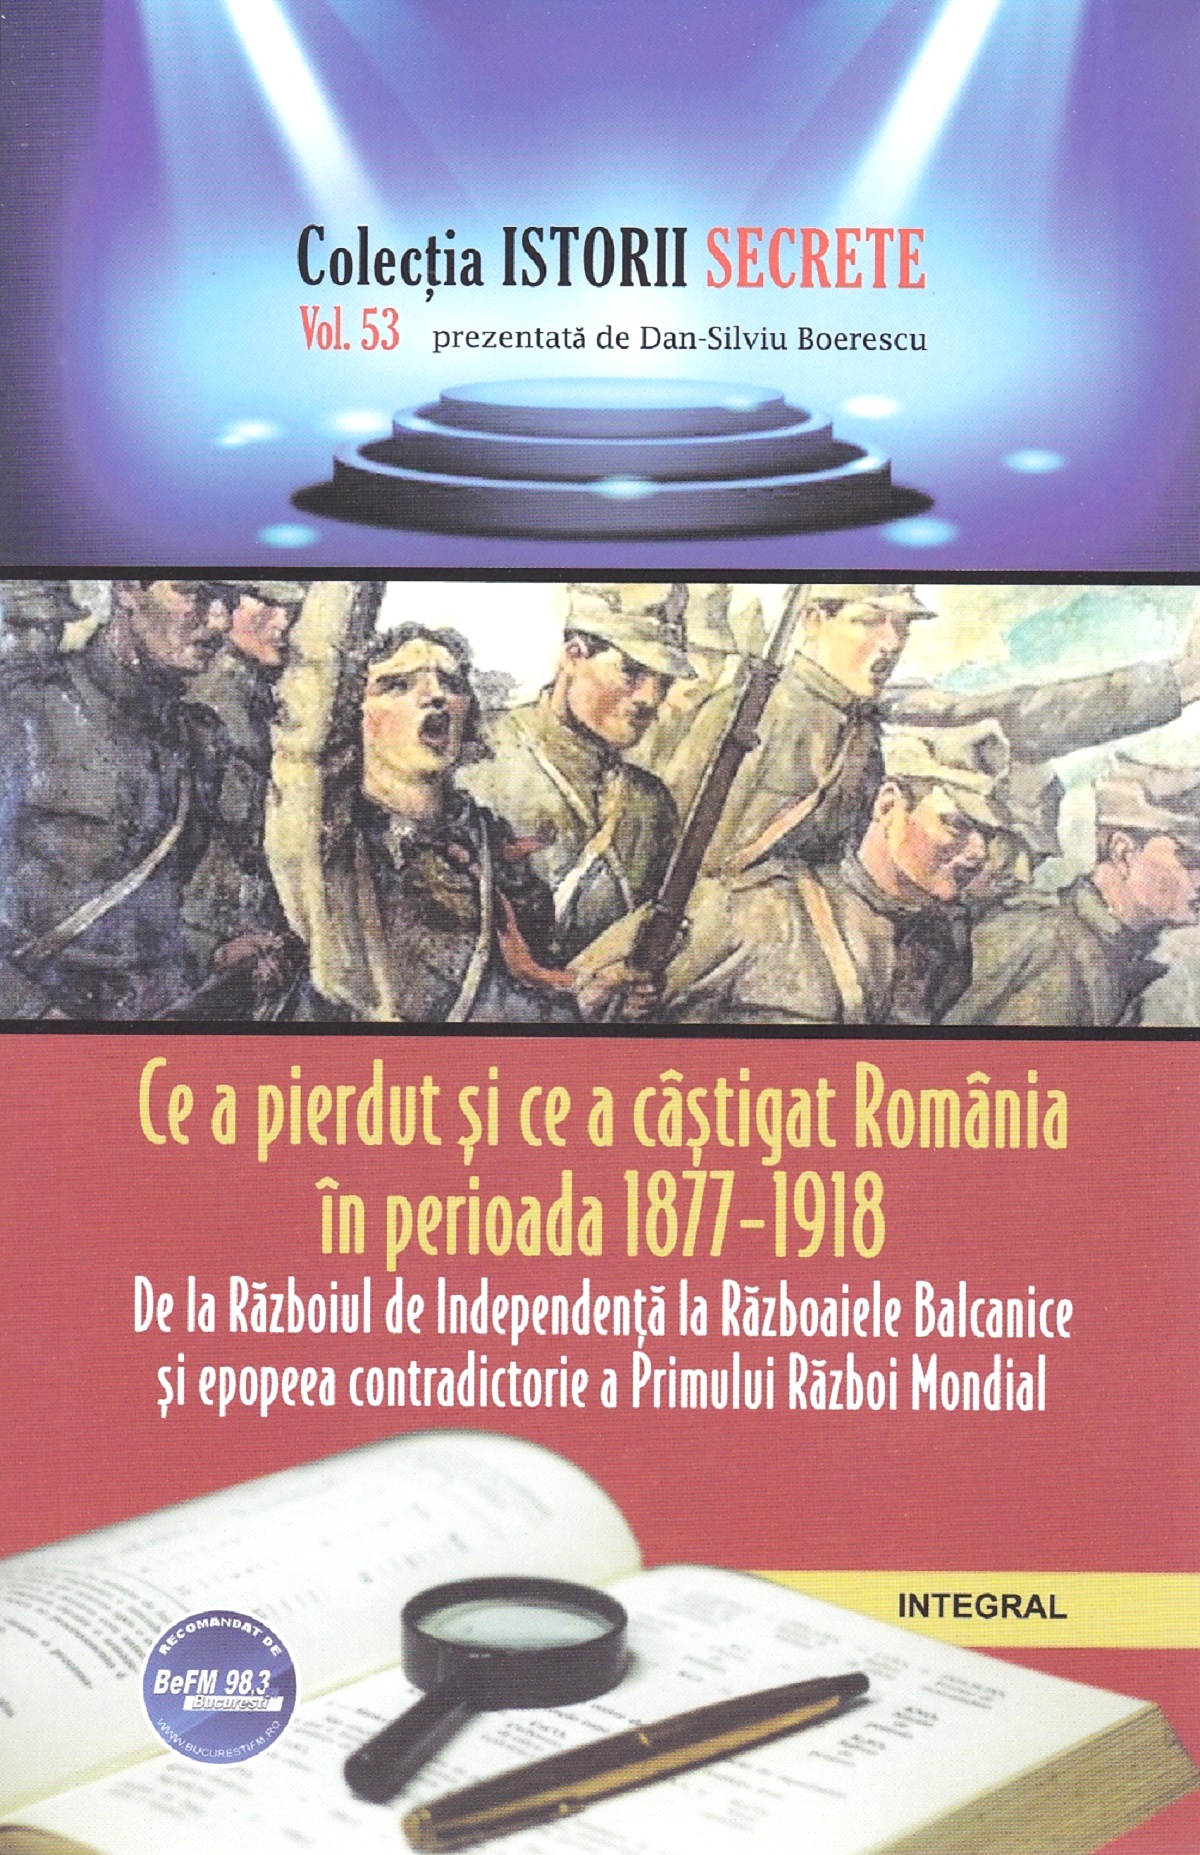 Istorii secrete Vol.53: Ce a pierdut si ce a castigat Romania - Dan-Silviu Boerescu